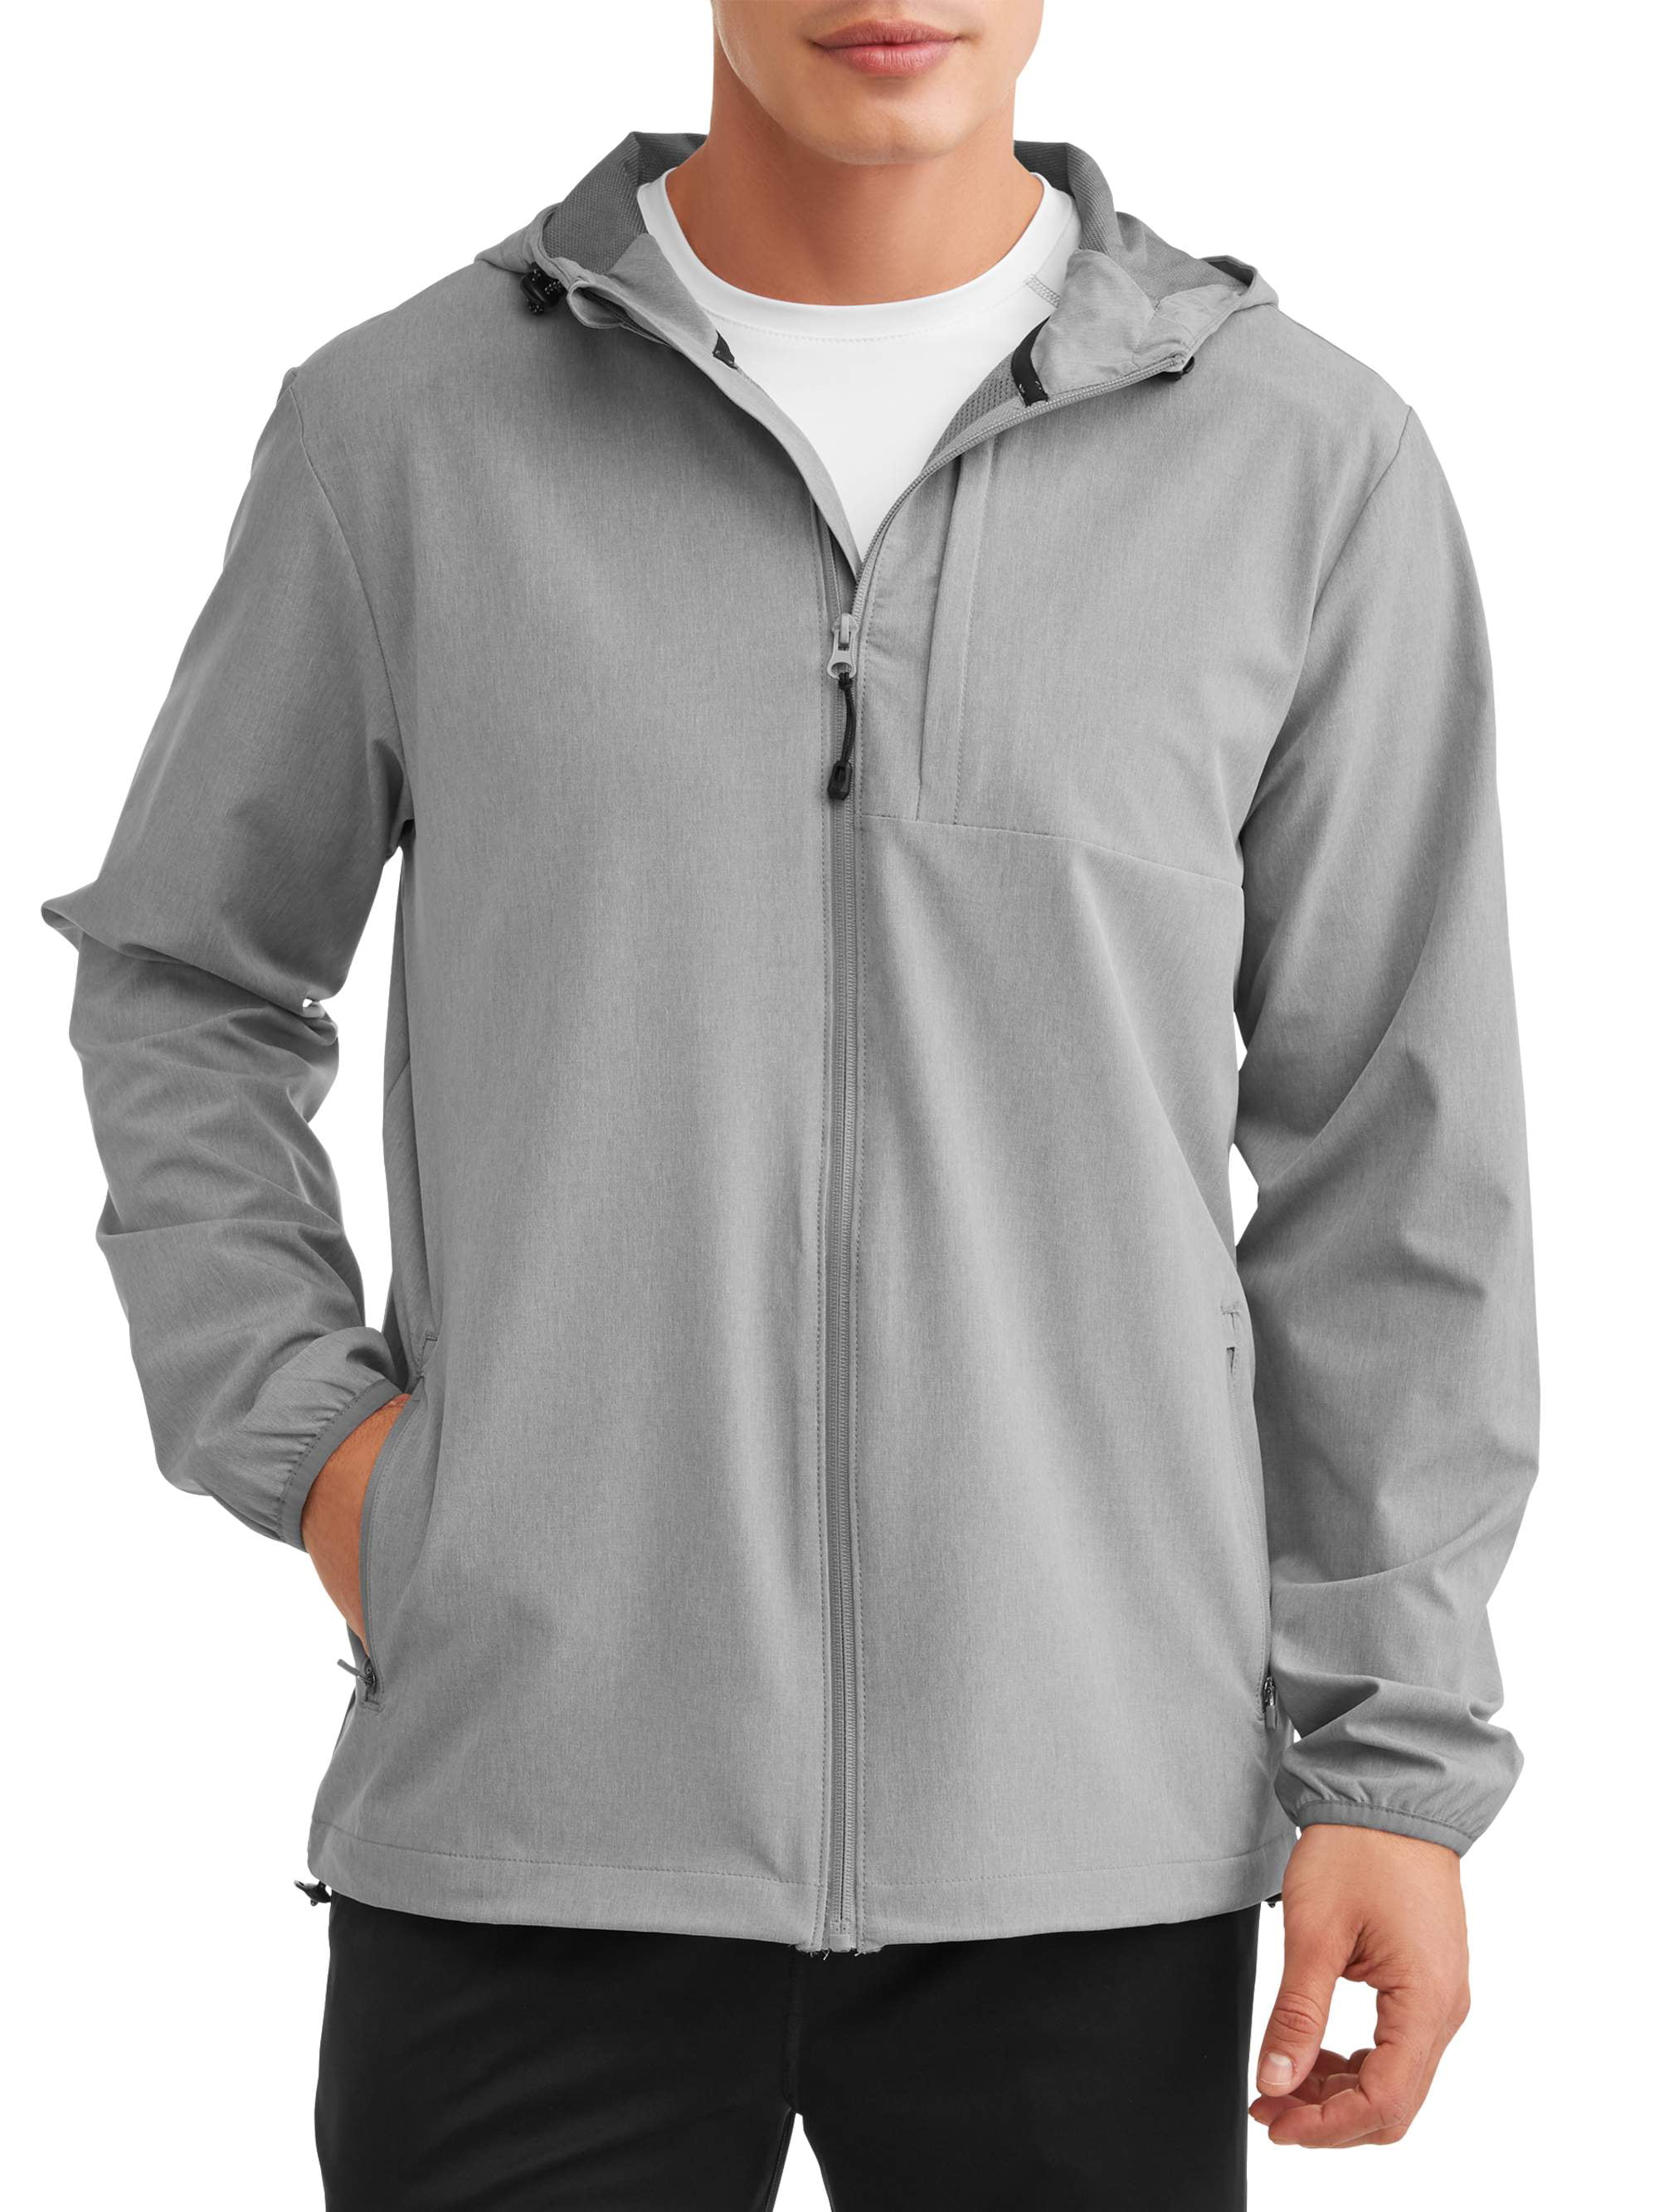 Men's Swiss Tech Soft Shell Jacket, up to Size 3XL - Walmart.com ...